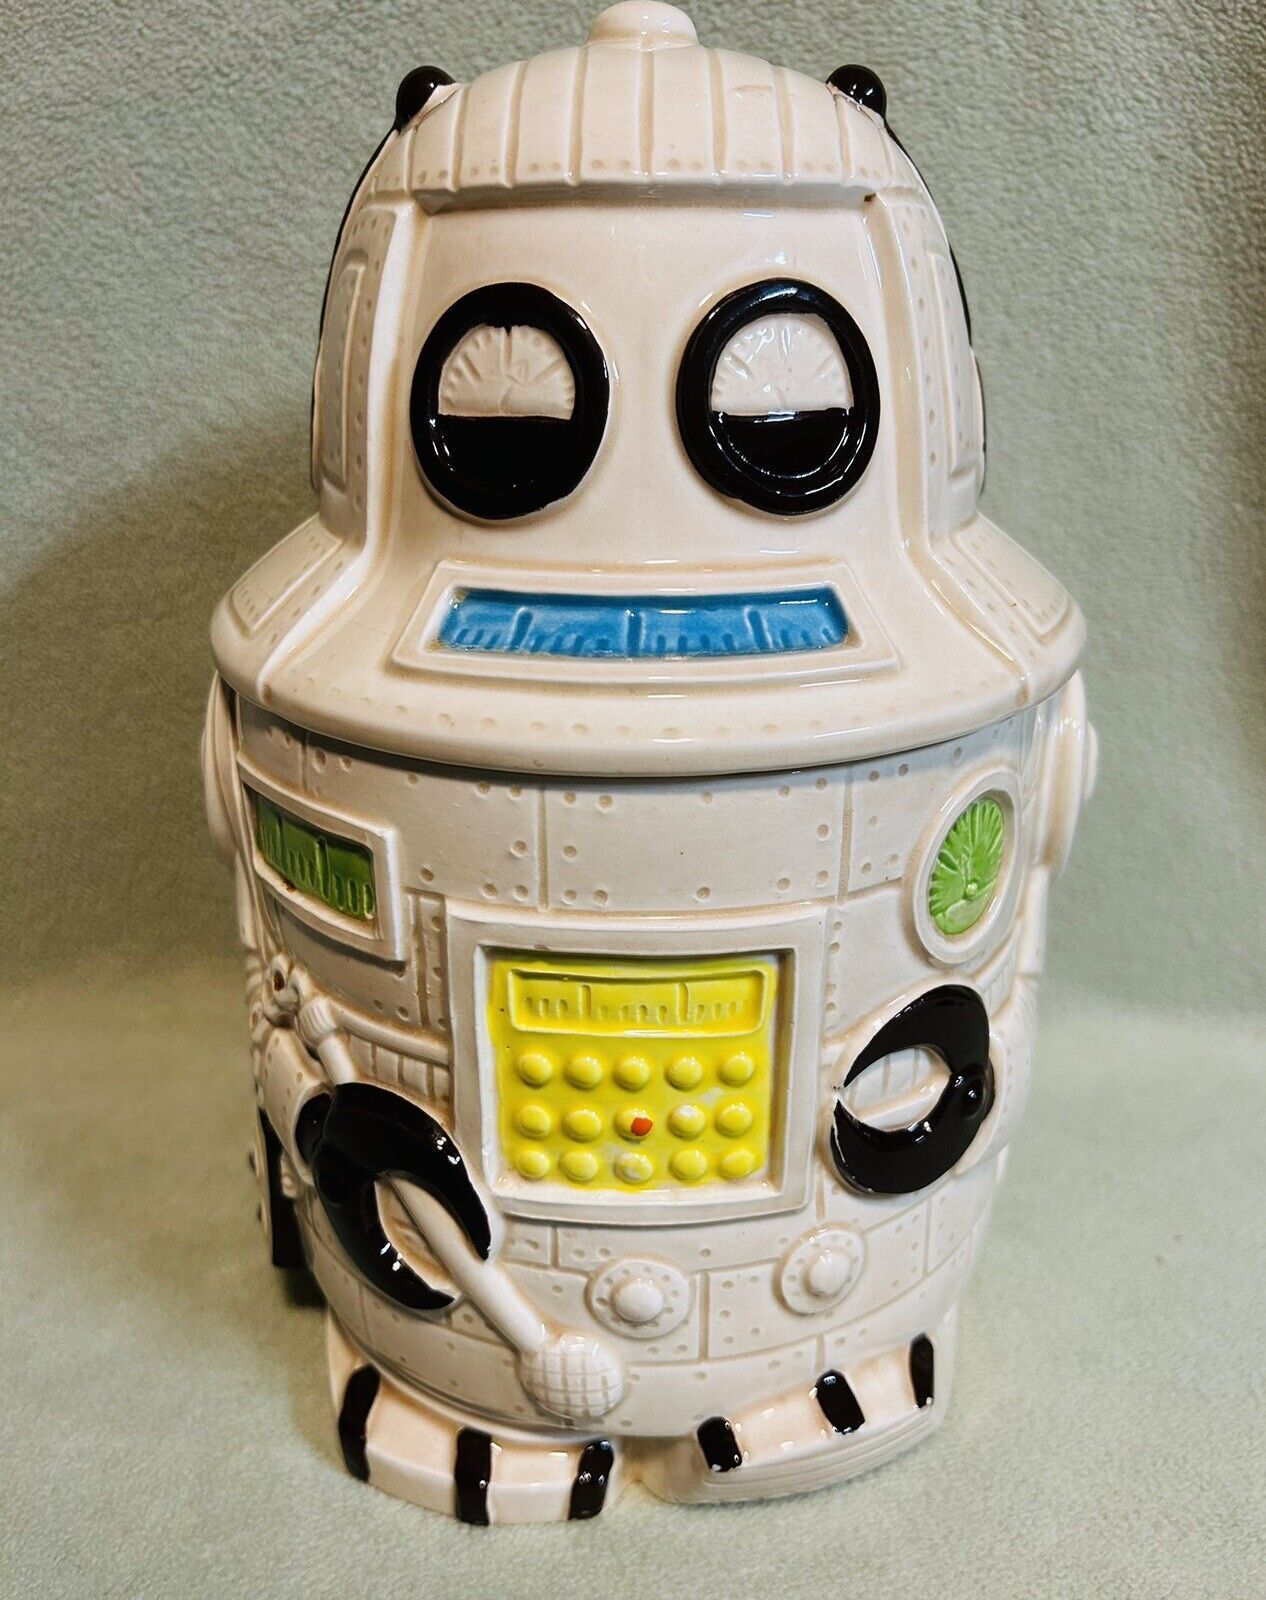 Rare Vintage Spaceman Robot Ceramic Cookie Jar (Japan) Awesome item